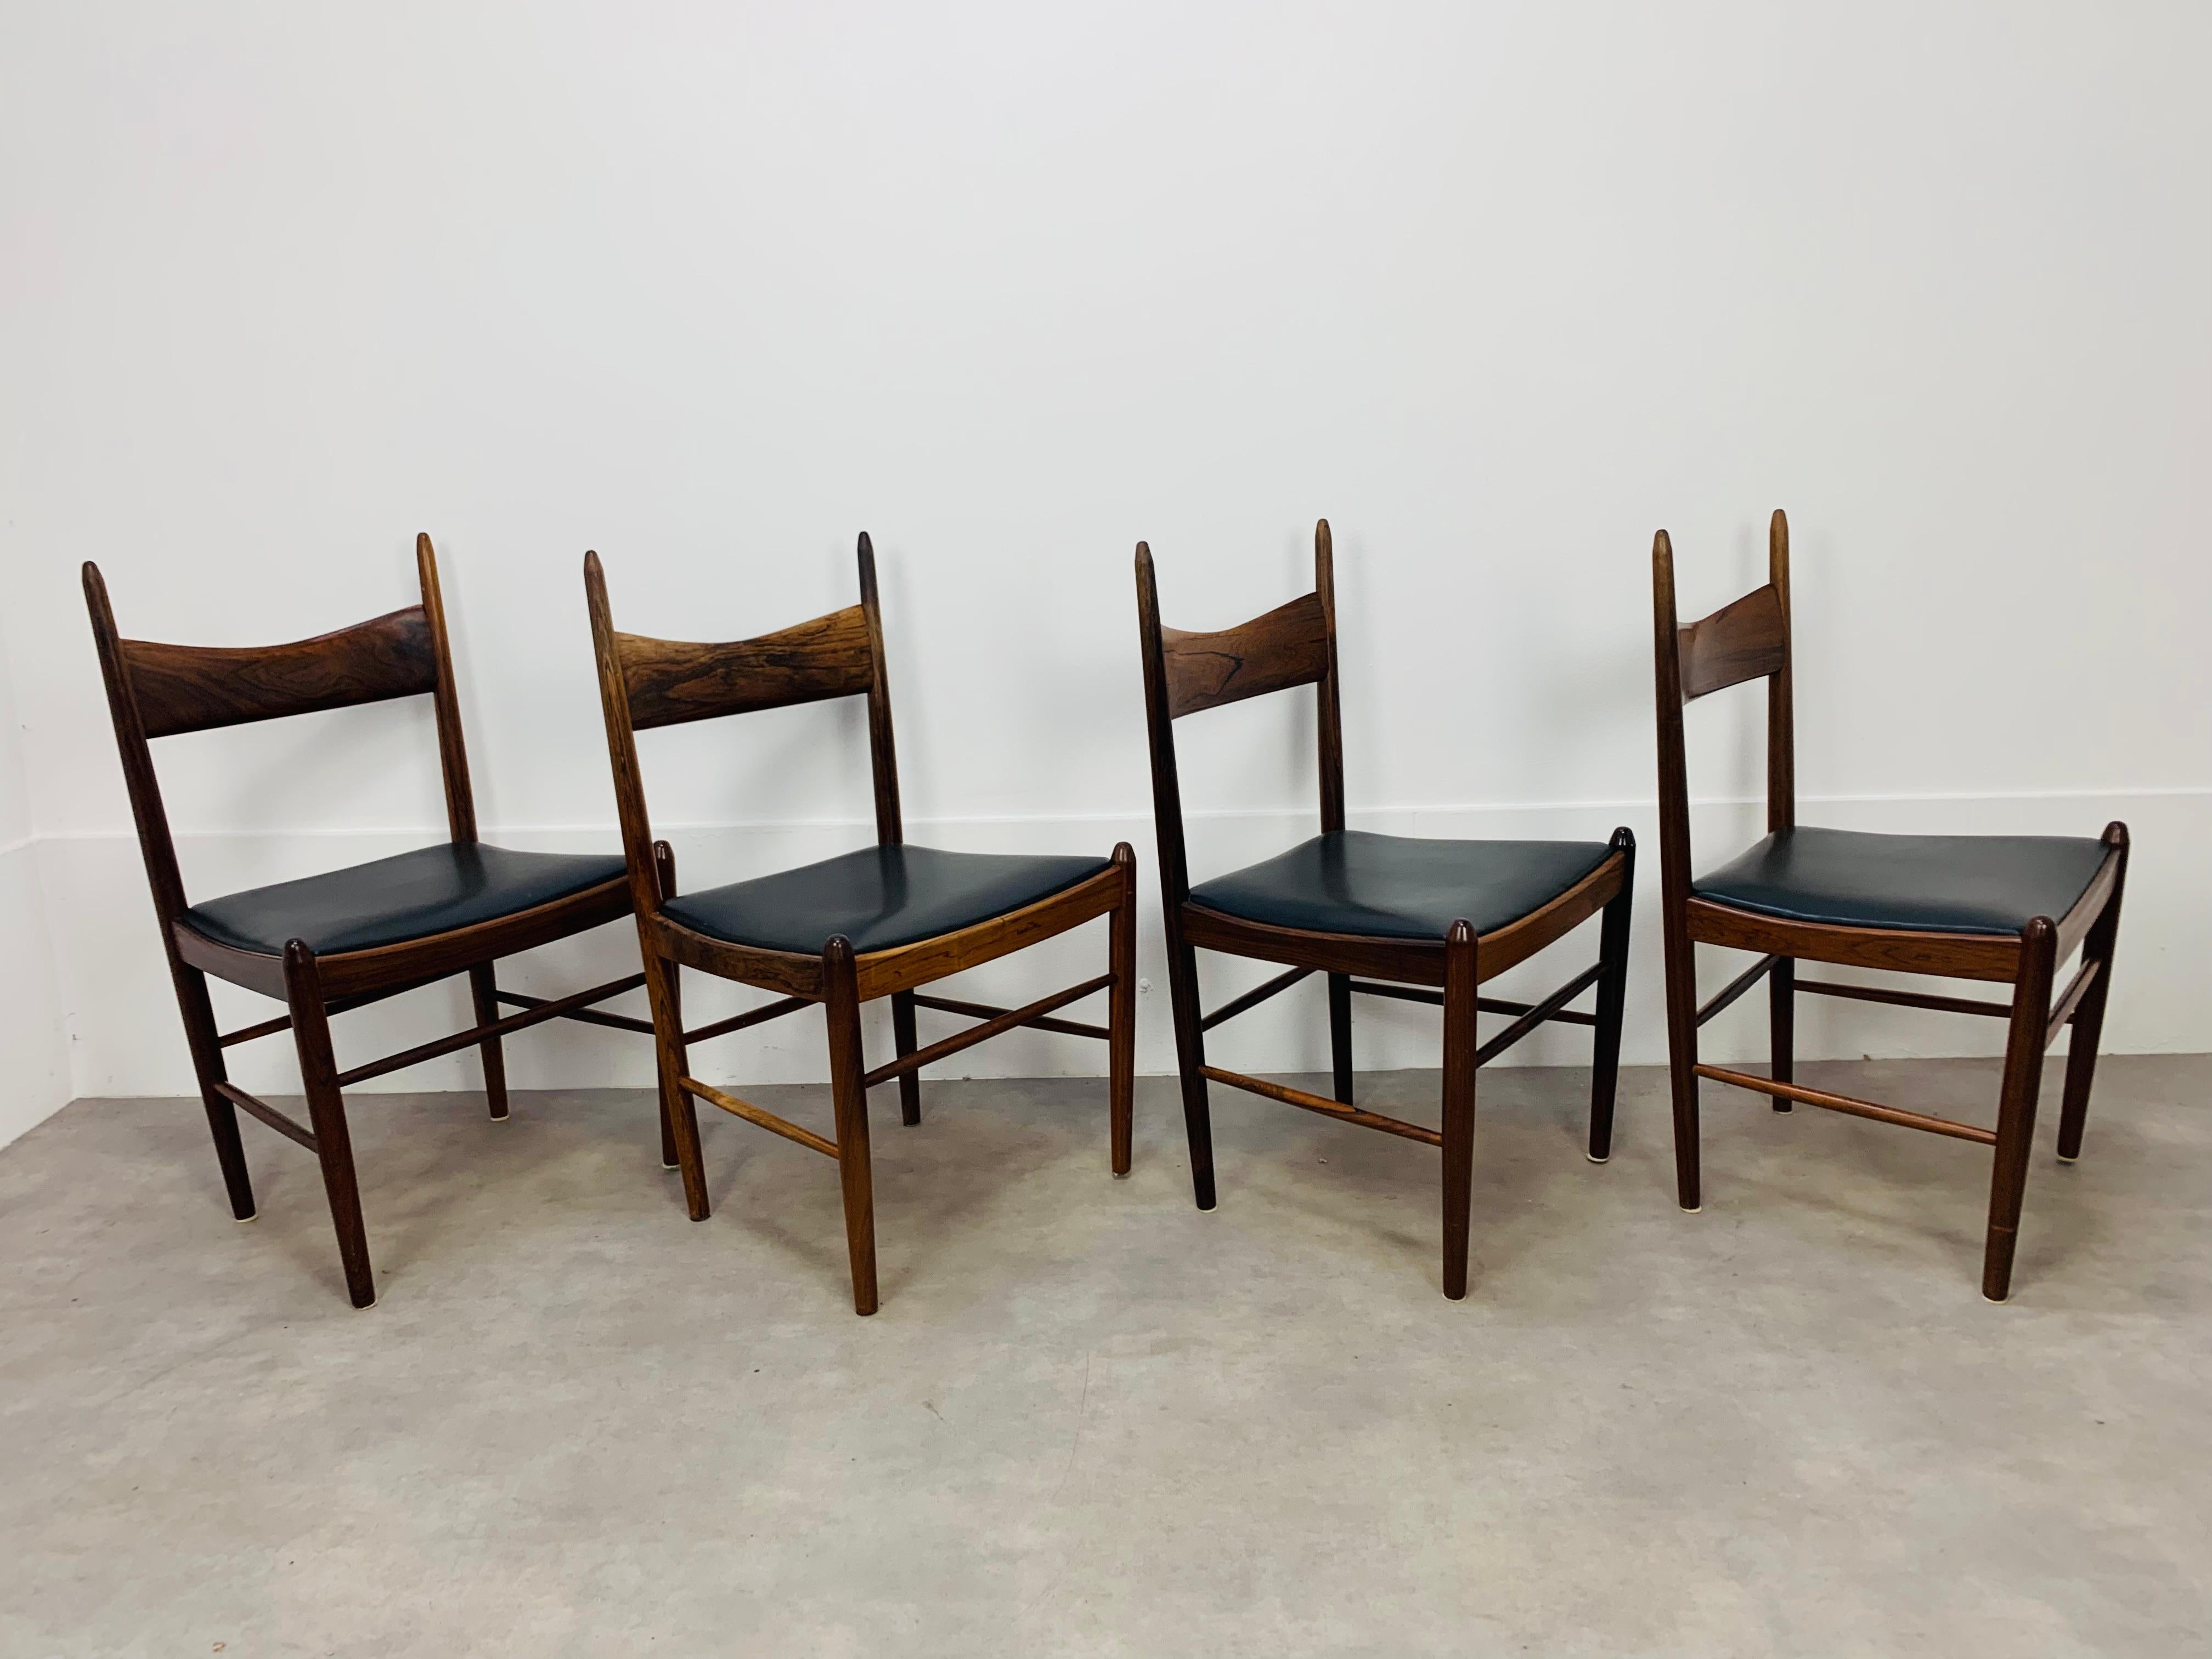 Satz von vier skandinavischen Stühlen, entworfen von Vestervig Eriksen für Tomborg Dänemark in den 1960er Jahren. Sie sind aus schönem Palisanderholz und schwarzem Kunstleder gefertigt. Sie sind in einem sehr sauberen Zustand, die Abnutzung ist im